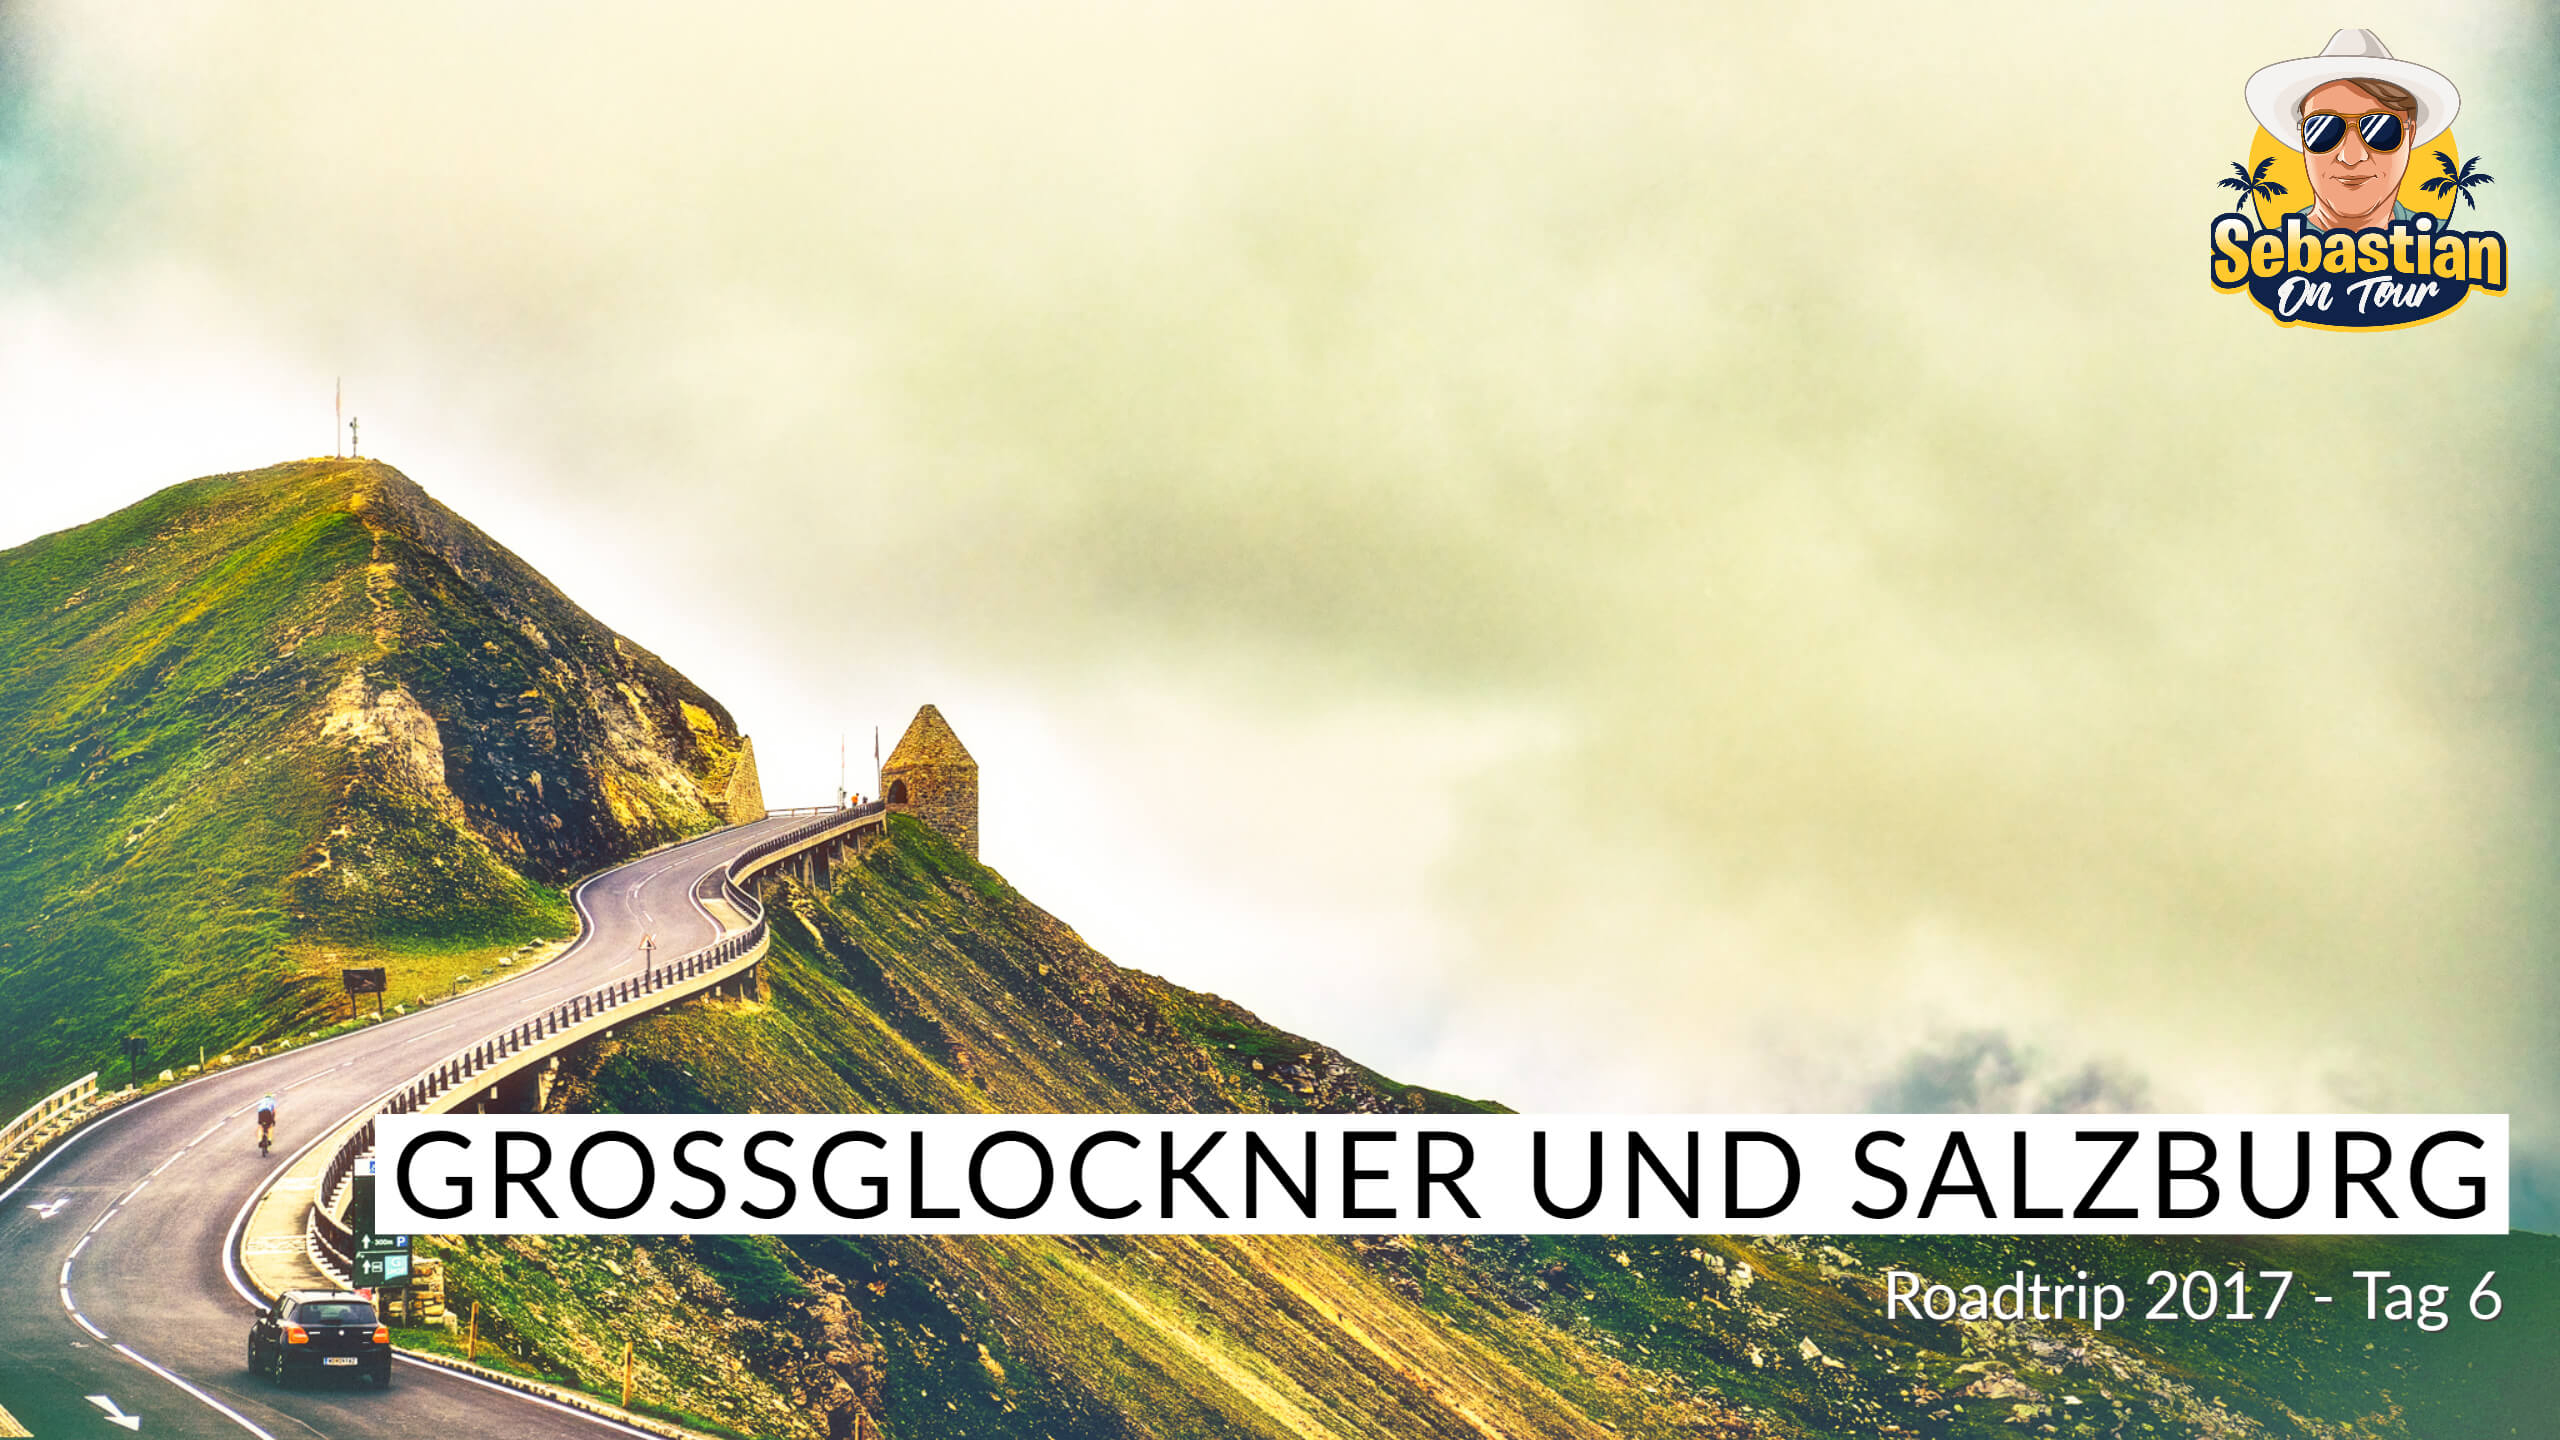 Grossglockner und Salzburg - Cabrio Tour 2017 - Tag 6